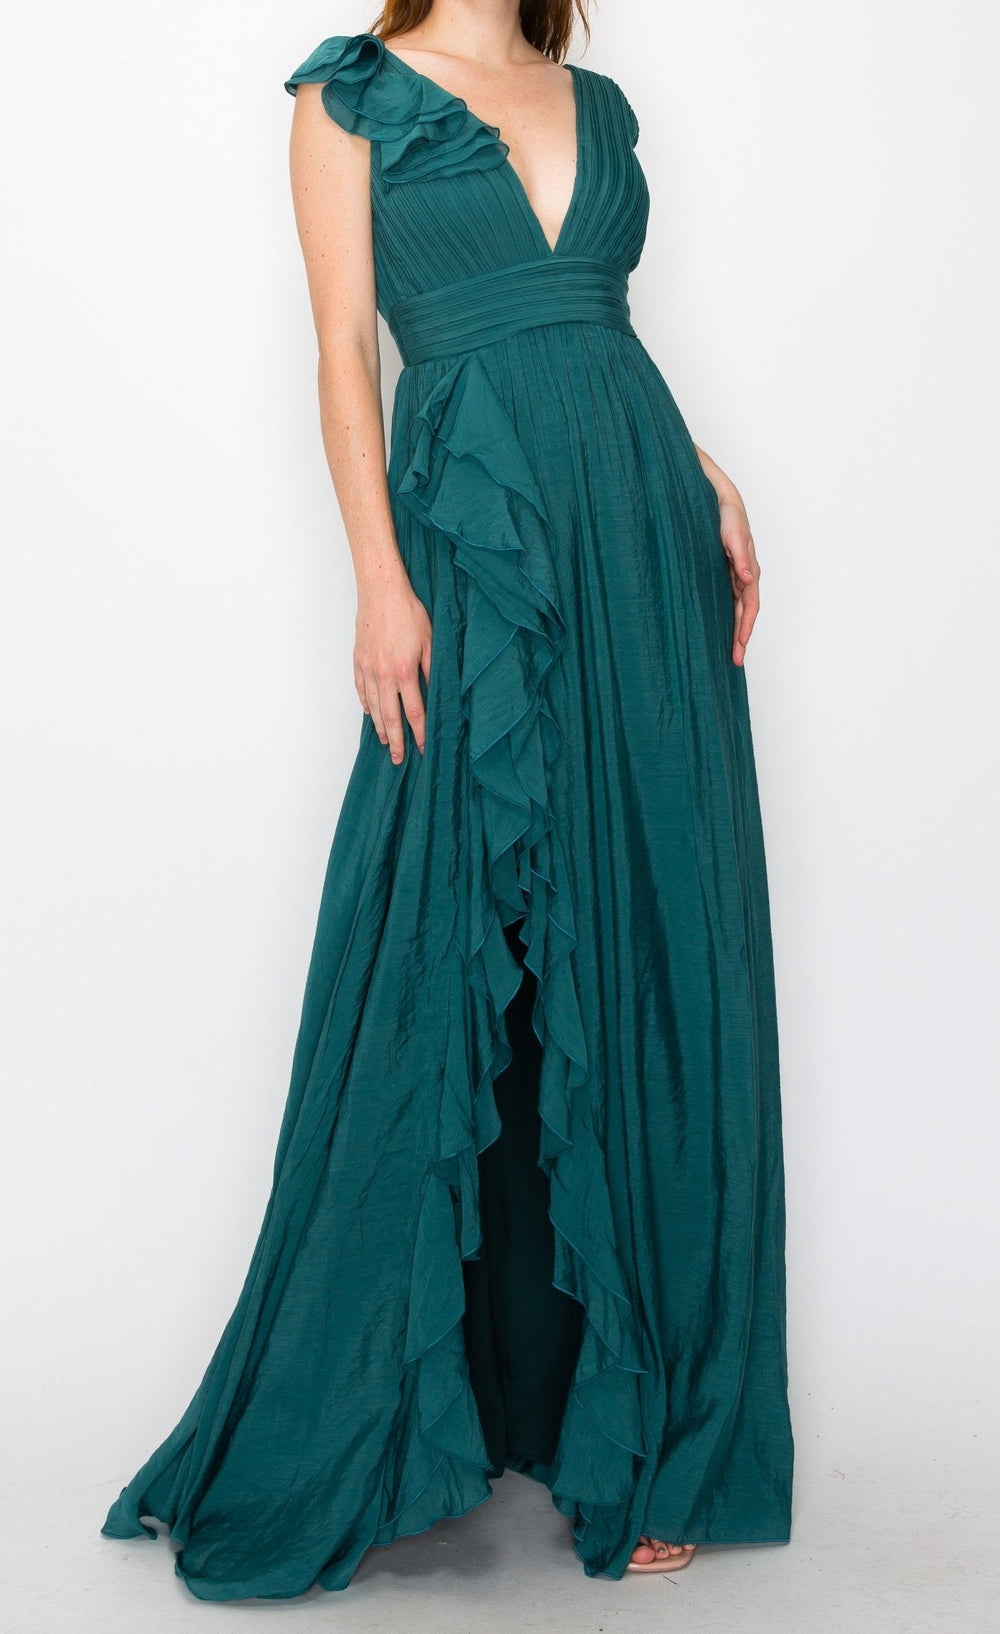 Dorota - verde - Lend the Trend renta de vestidos mexico